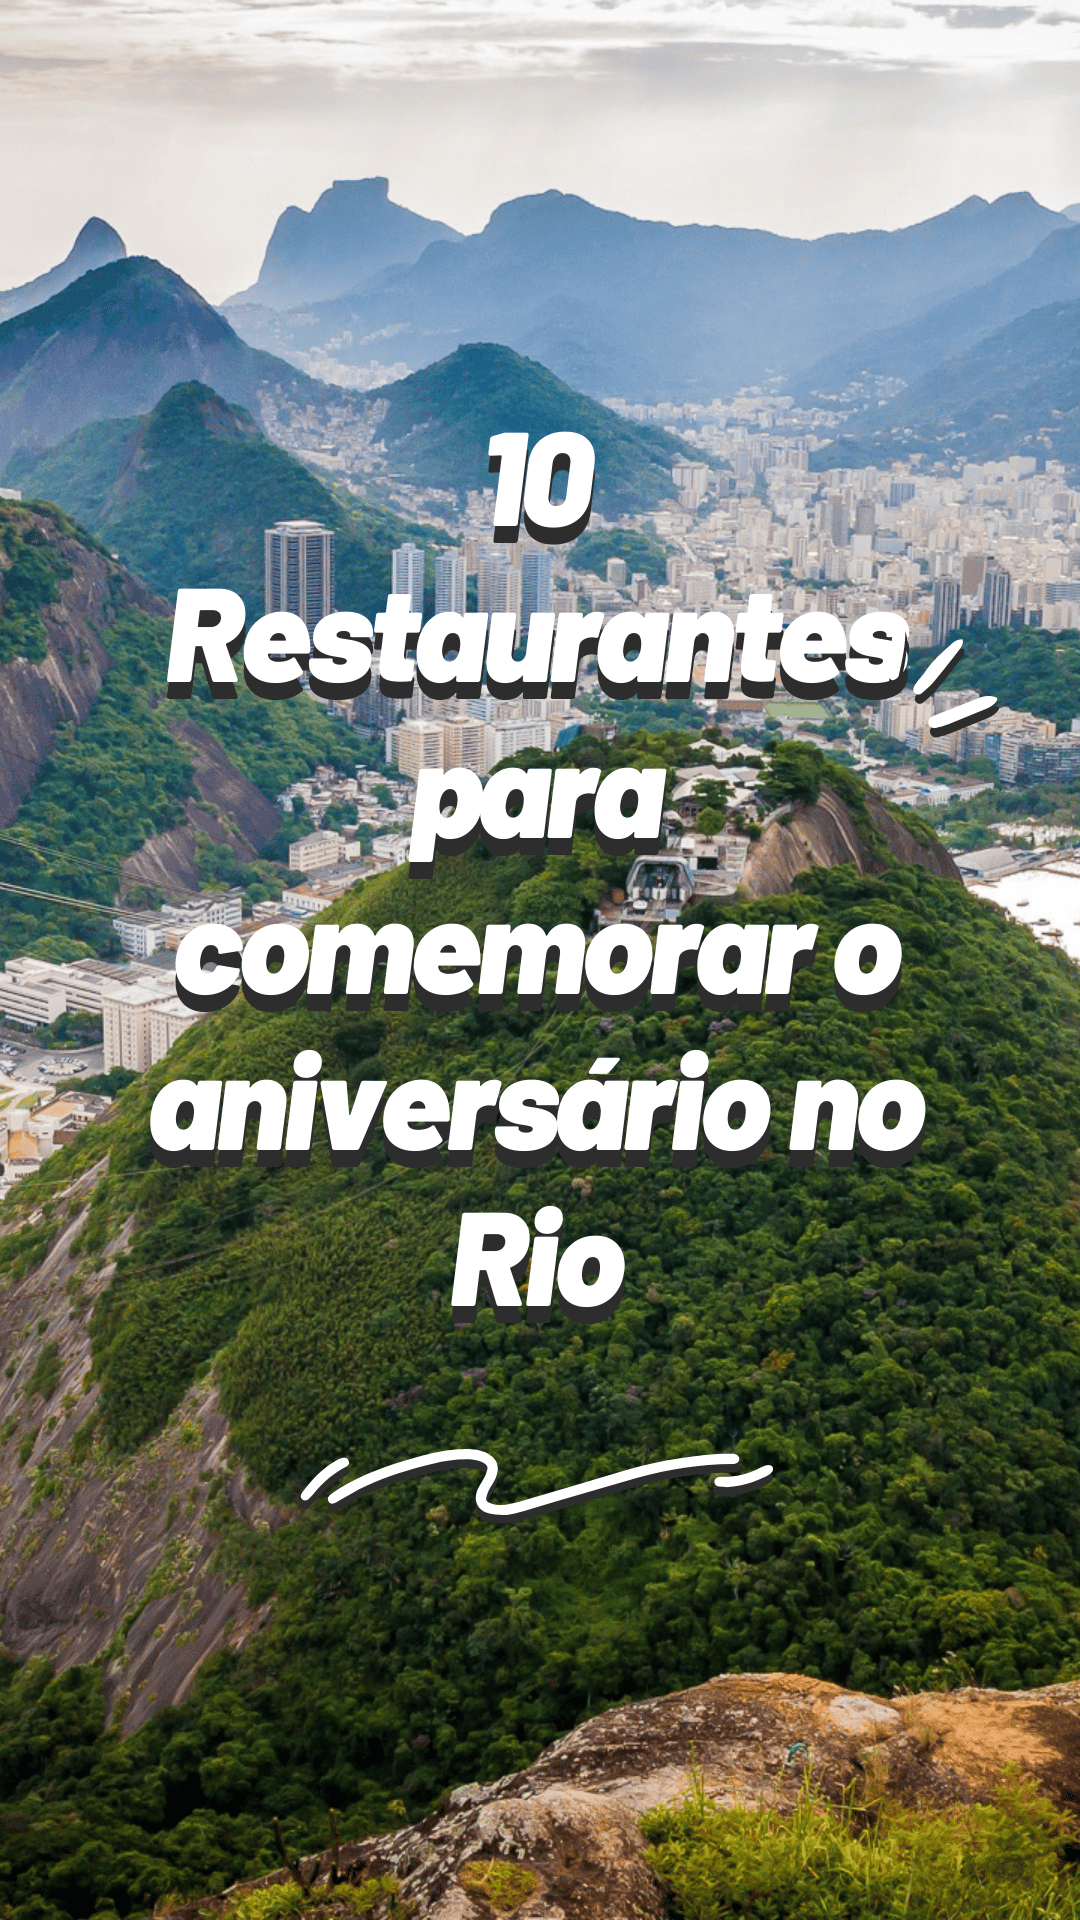 LUGARES SECRETOS No Rio De Janeiro: Restaurante Esquilos